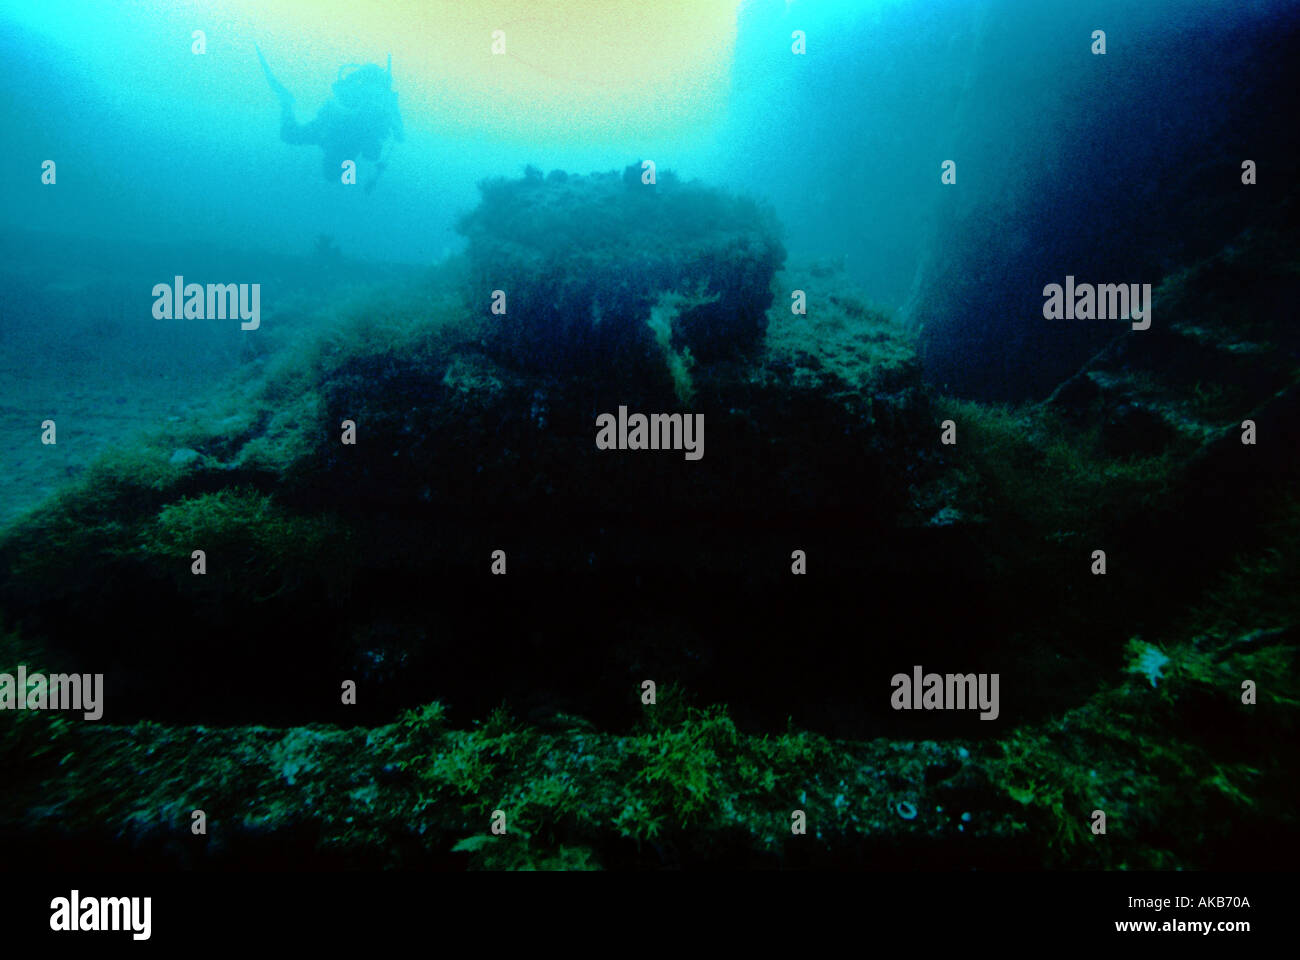 Ein Taucher ist Silhouette, wie sie nähert sich einen Panzer untergetaucht im Sediment auf das Schiffswrack der Nipo Maru Truk Lagoon Mikronesien Stockfoto